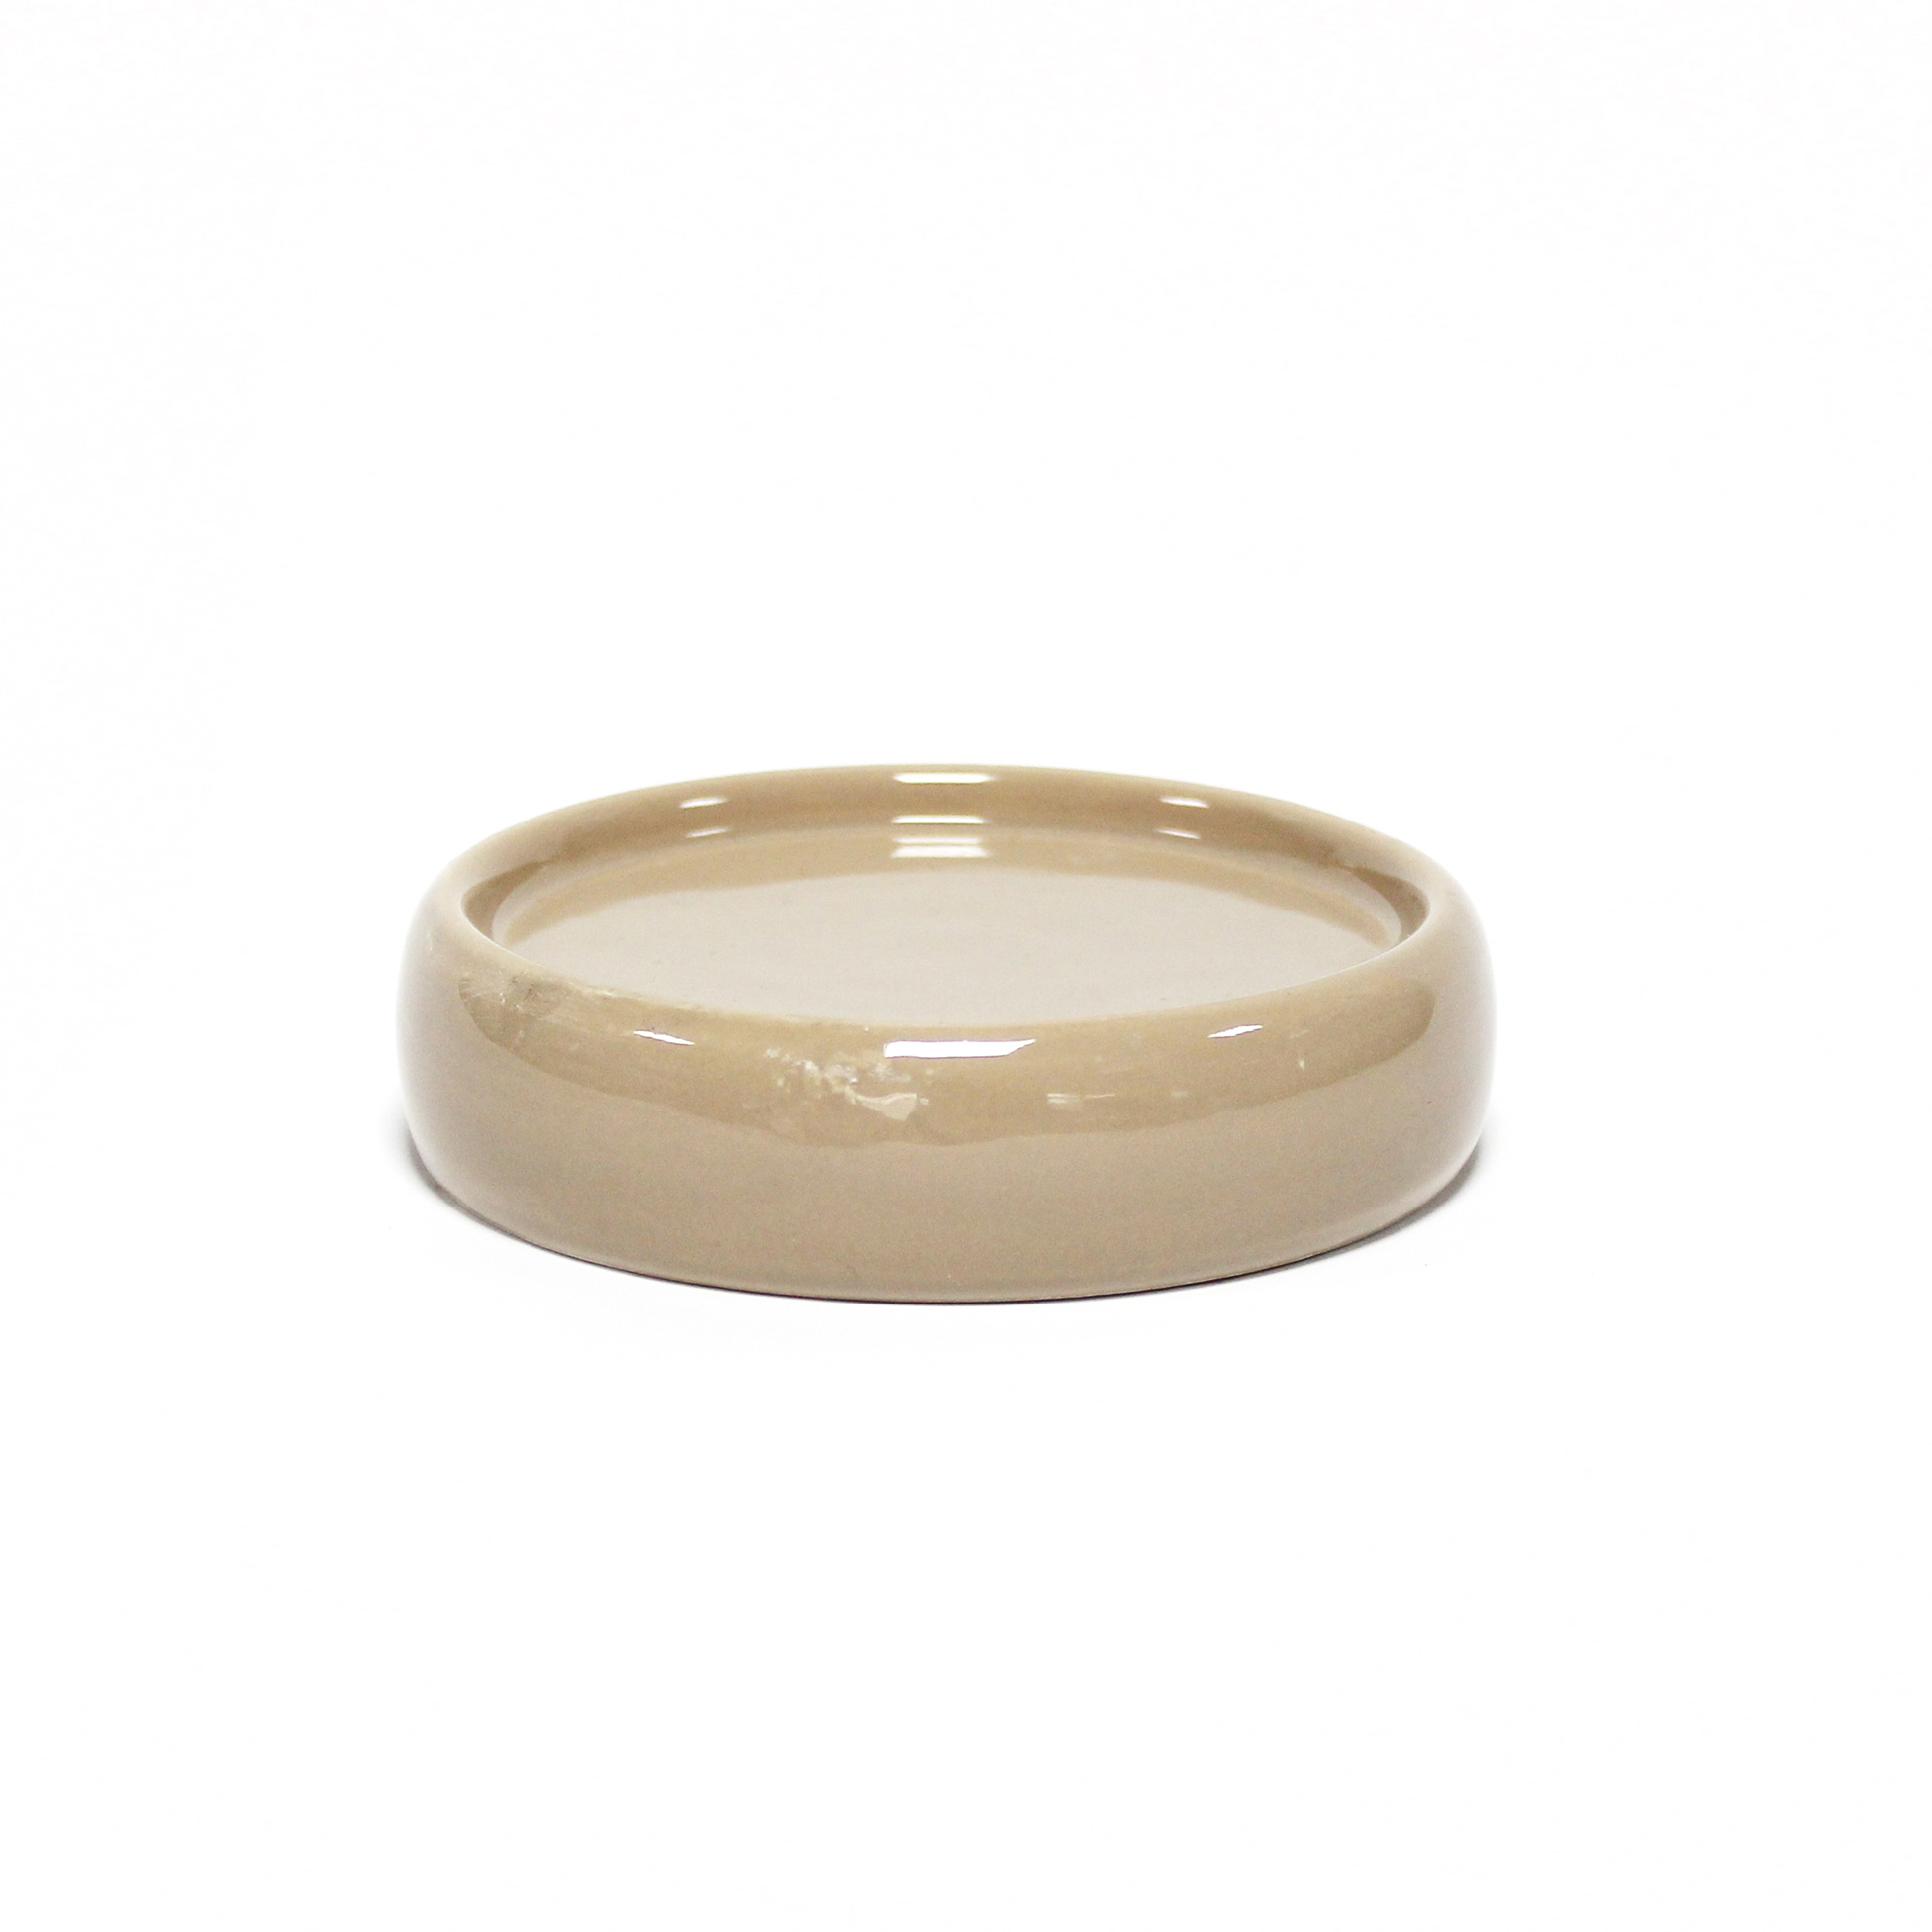 Porte savon en ceramique 3.5 x 10 cm Bulleas taupe